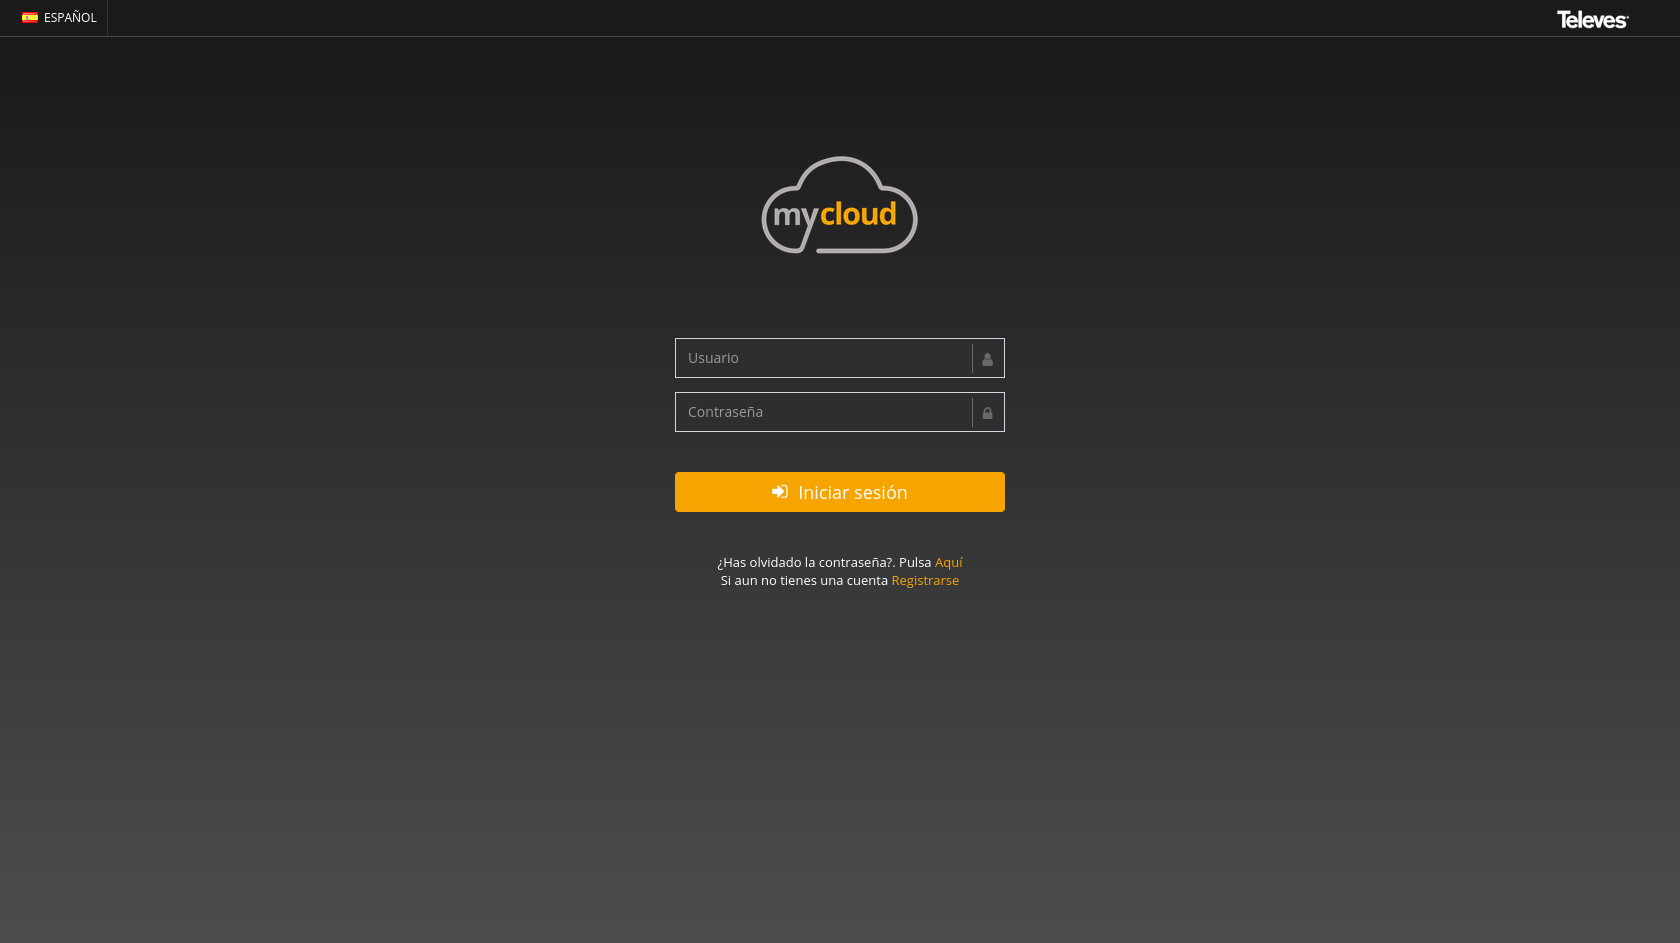 Acceso al portal MyCloud: introduce tu cuenta de usuario, la misma utilizada para registrar los medidores